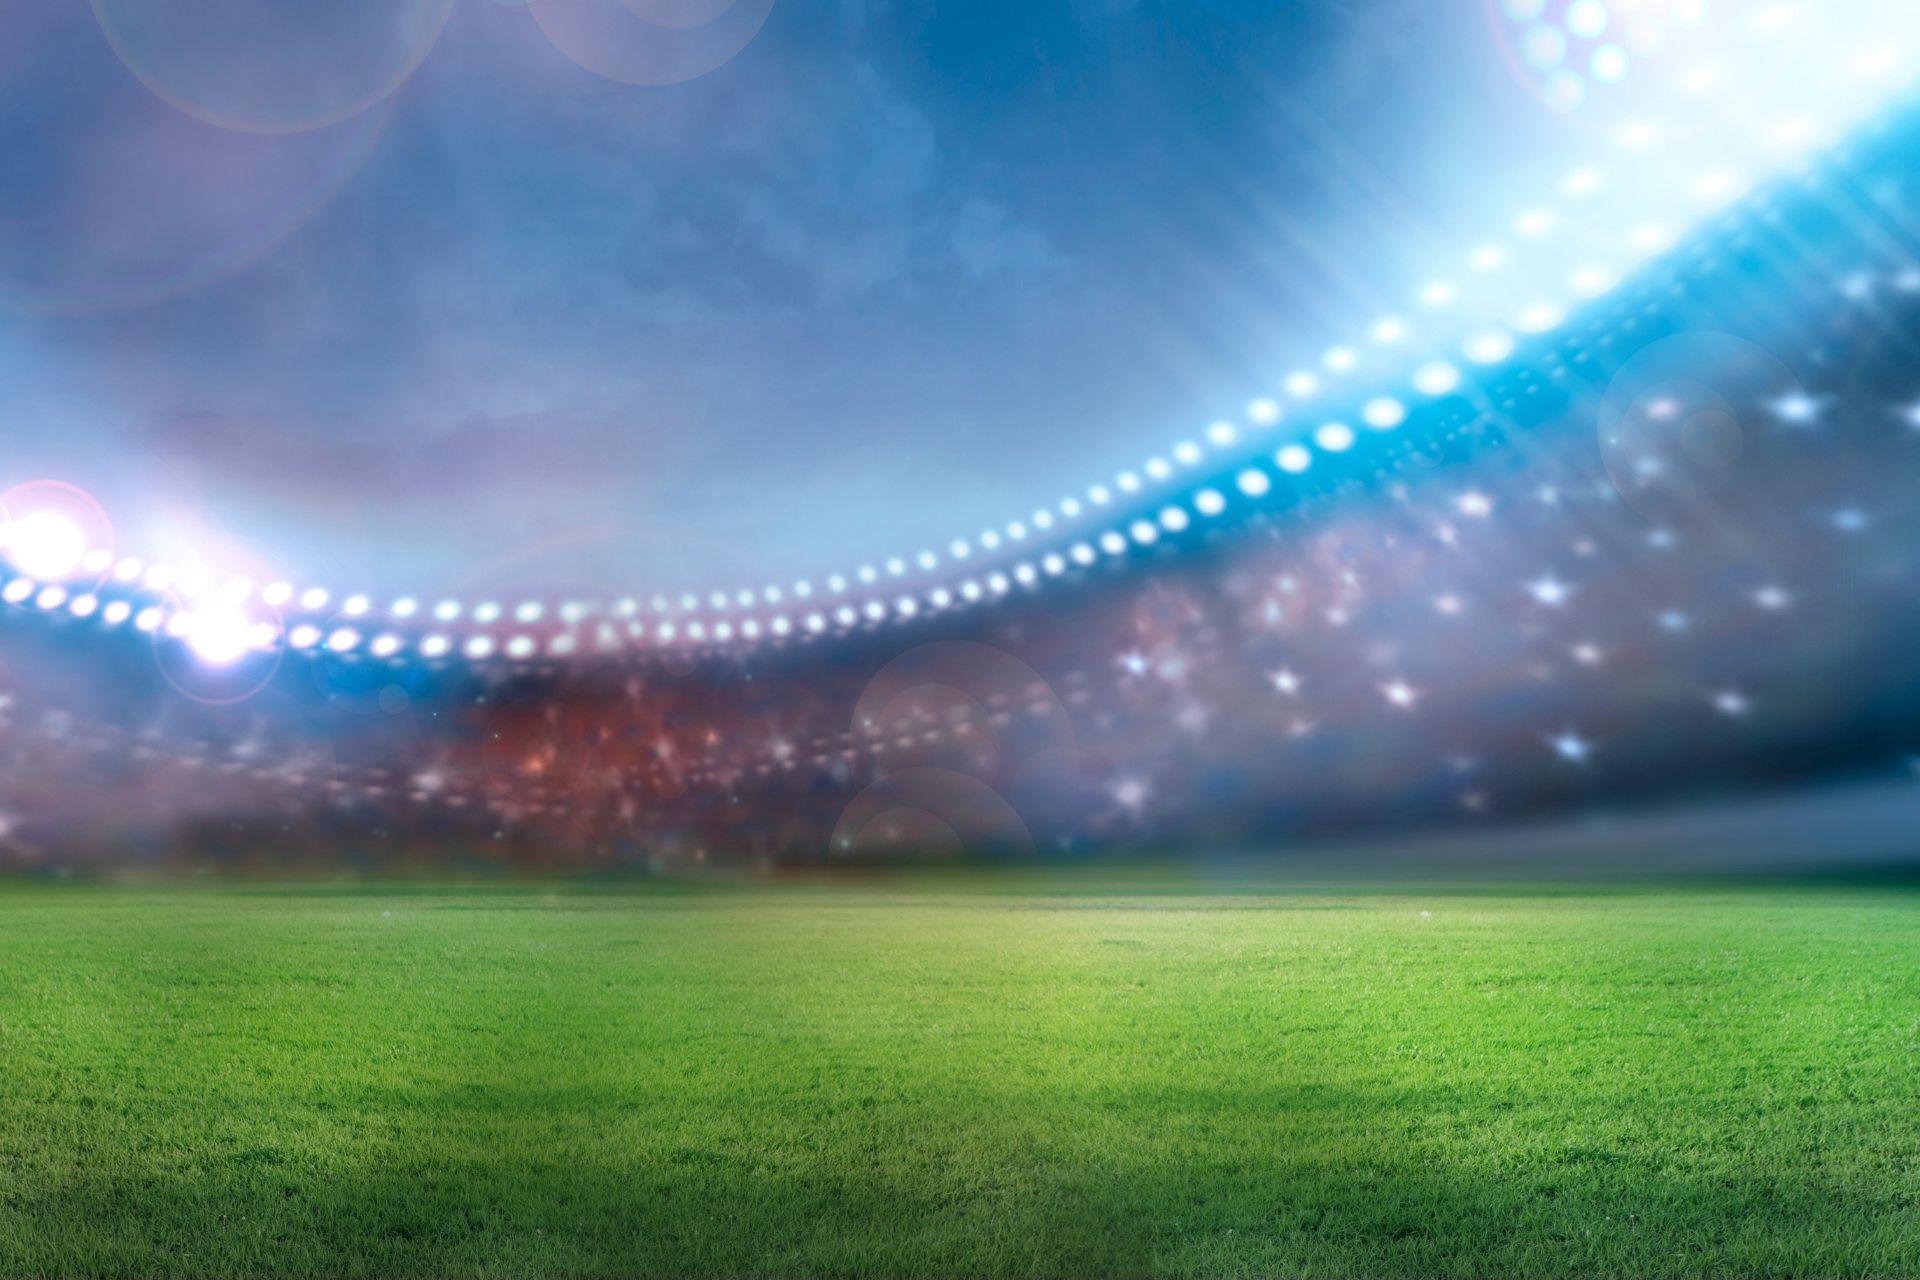 Dnia 2023-05-14 18:45 na stadionie Stade Orange Vélodrome odbyło się spotkanie pomiędzy Marseille i Angers zakończone wynikiem 3-1